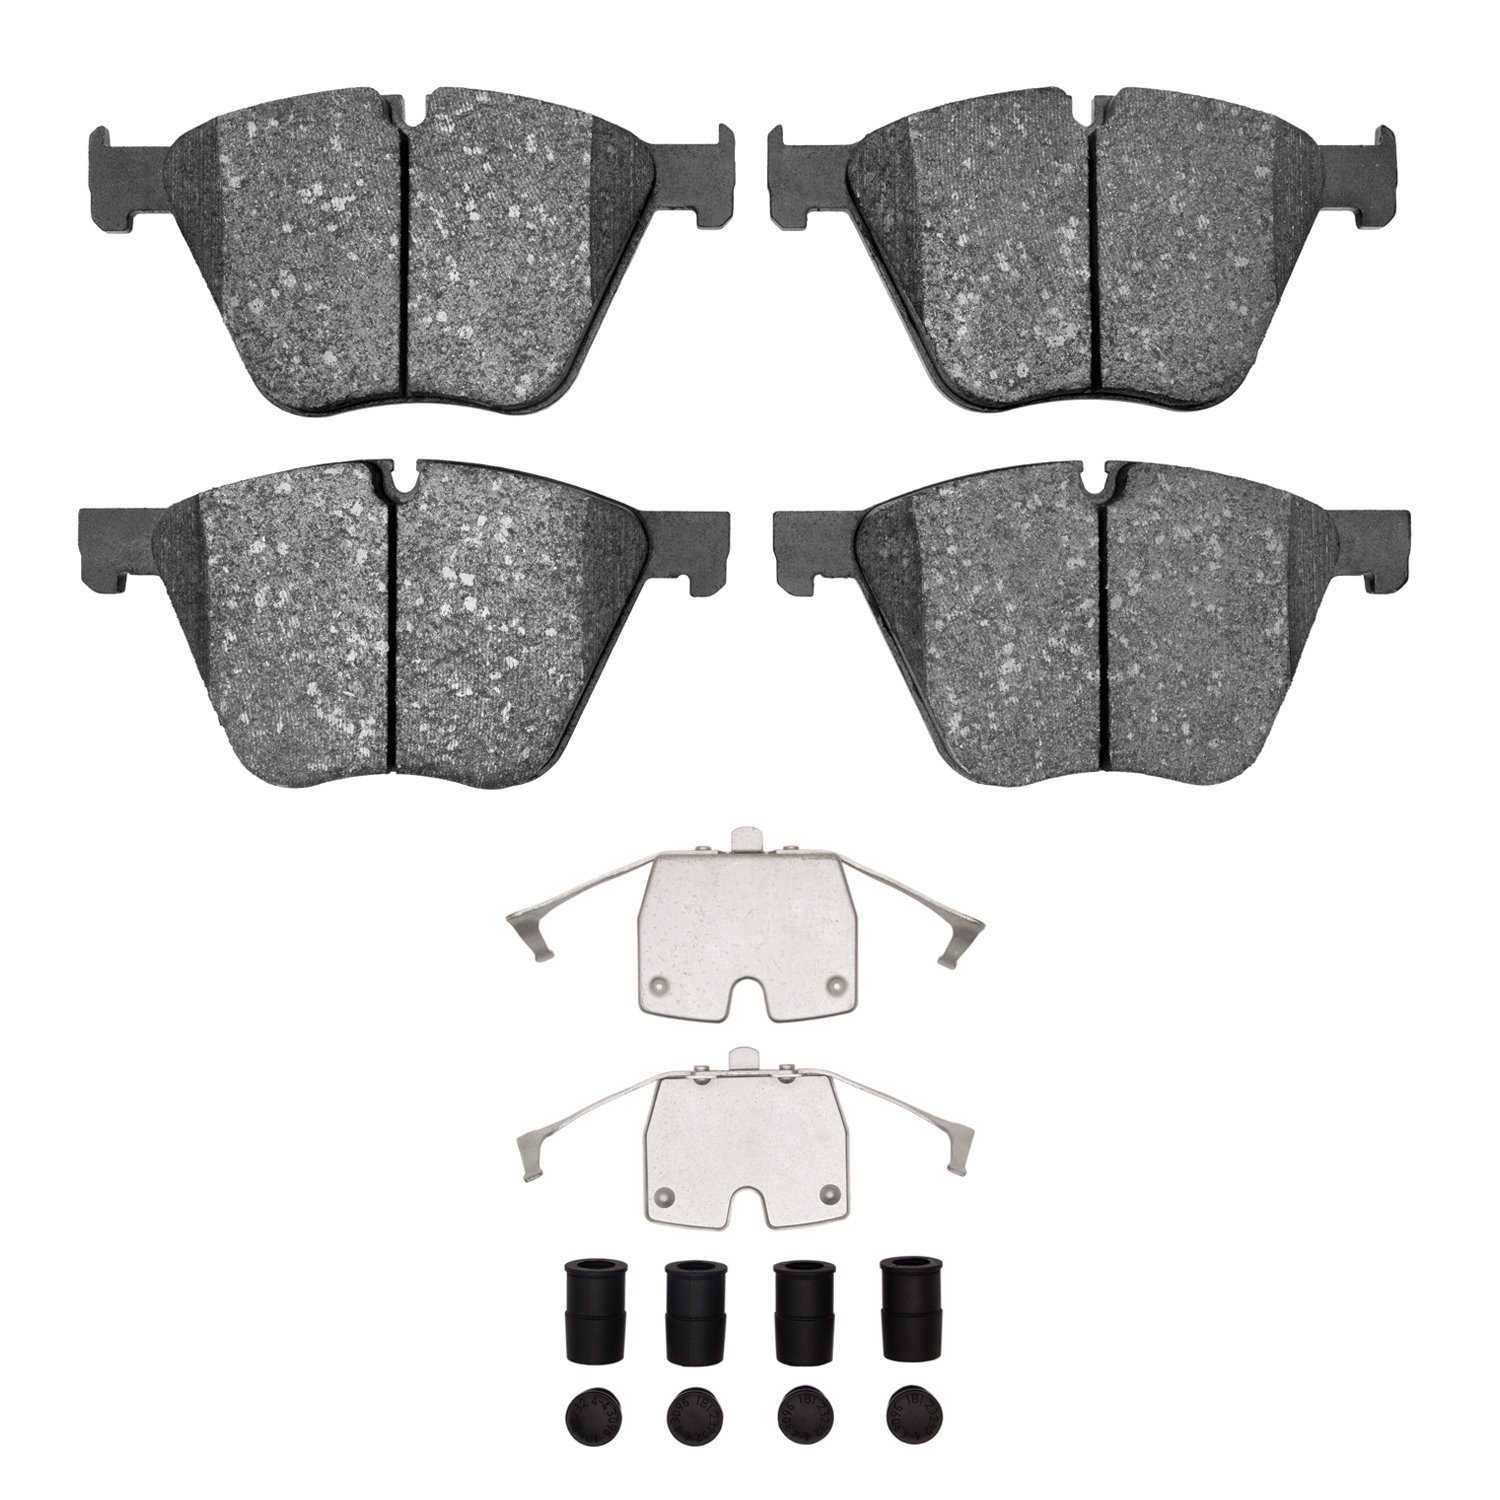 1600-1443-01 5000 Euro Ceramic Brake Pads & Hardware Kit, 2010-2019 BMW, Position: Front